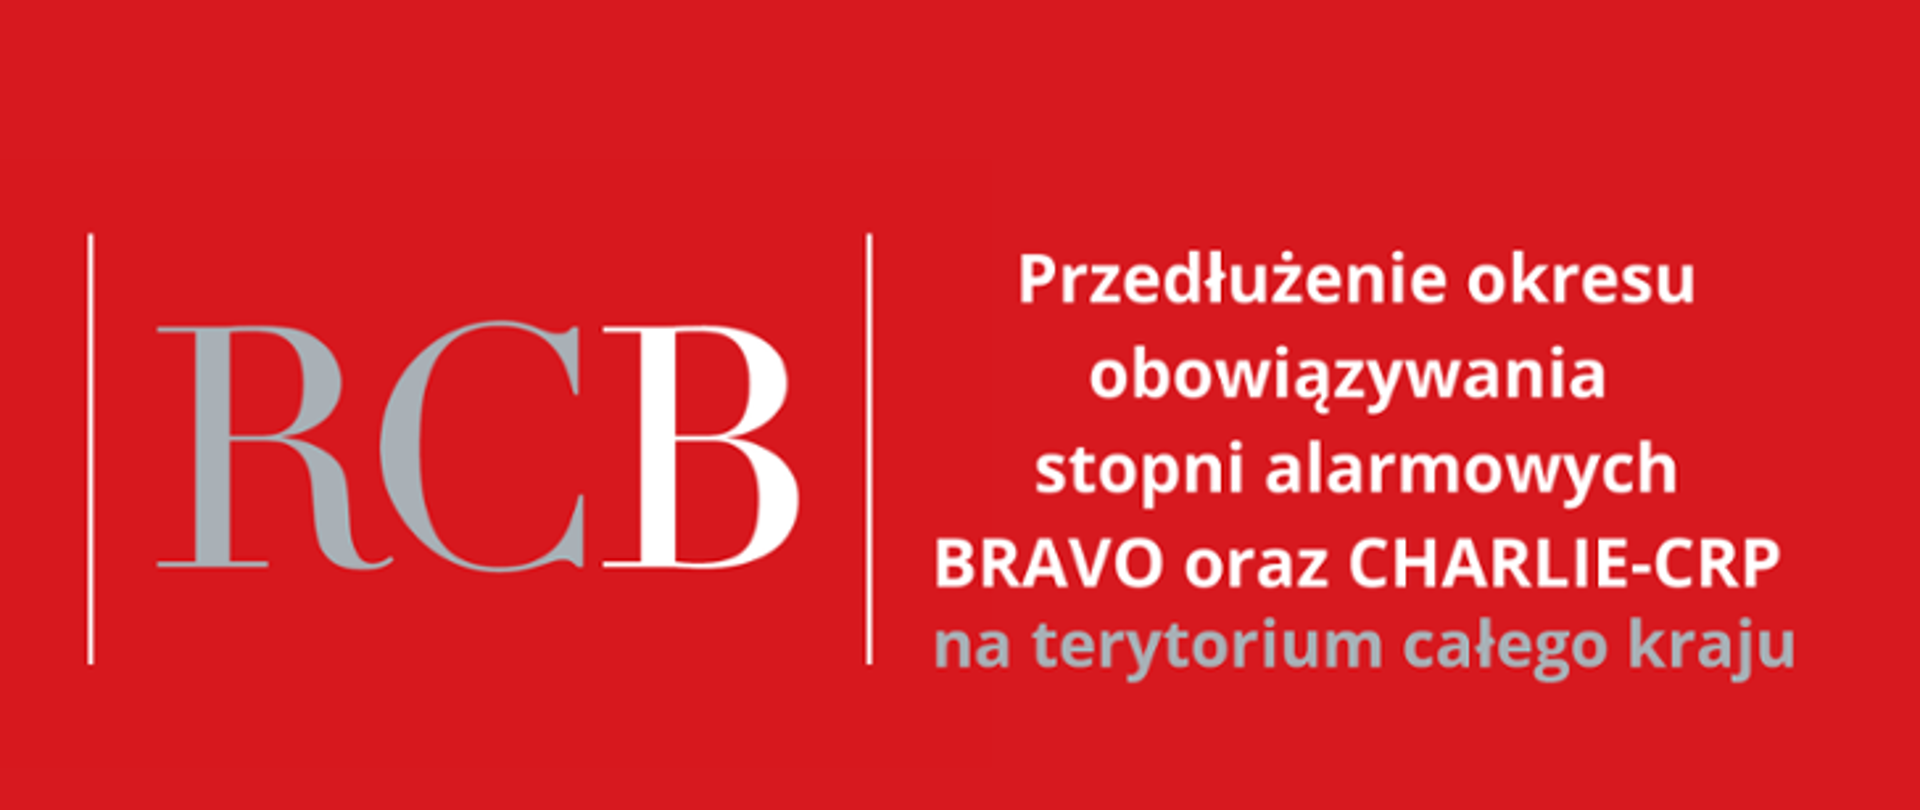 RCB - tekst na czerwonym tle: Przedłużenie okresu obowiązywania stopni alarmowych BRAVO oraz CHARLIE-CRP na terytorium całego kraju